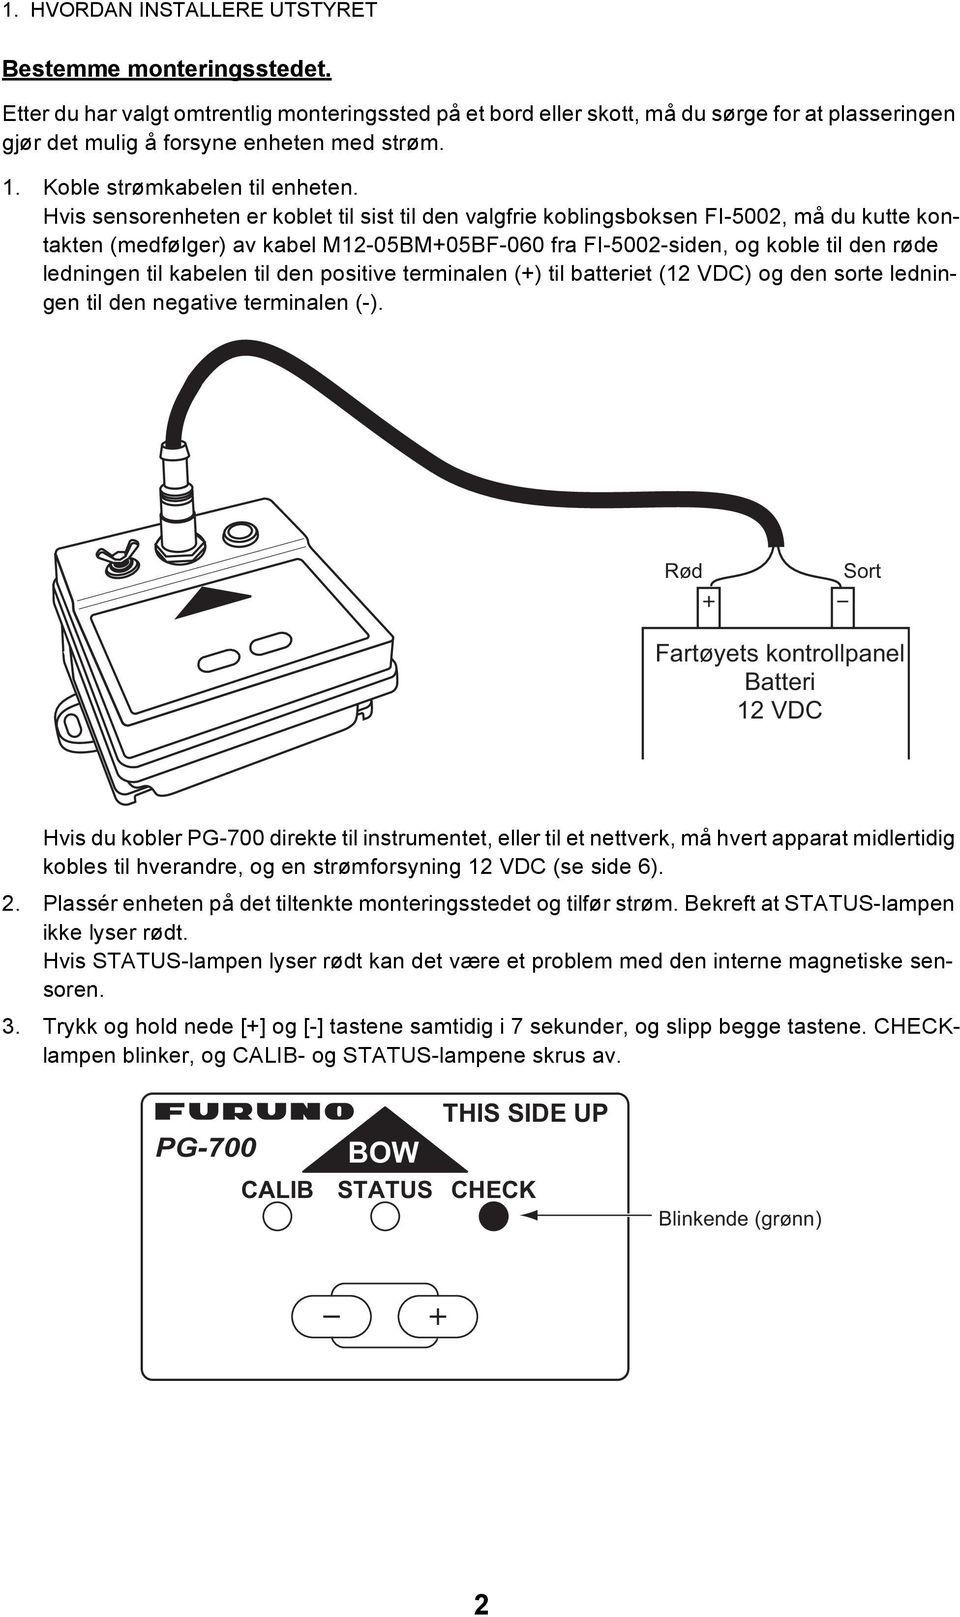 Hvis sensorenheten er koblet til sist til den valgfrie koblingsboksen FI-5002, må du kutte kontakten (medfølger) av kabel M12-05BM+05BF-060 fra FI-5002-siden, og koble til den røde ledningen til